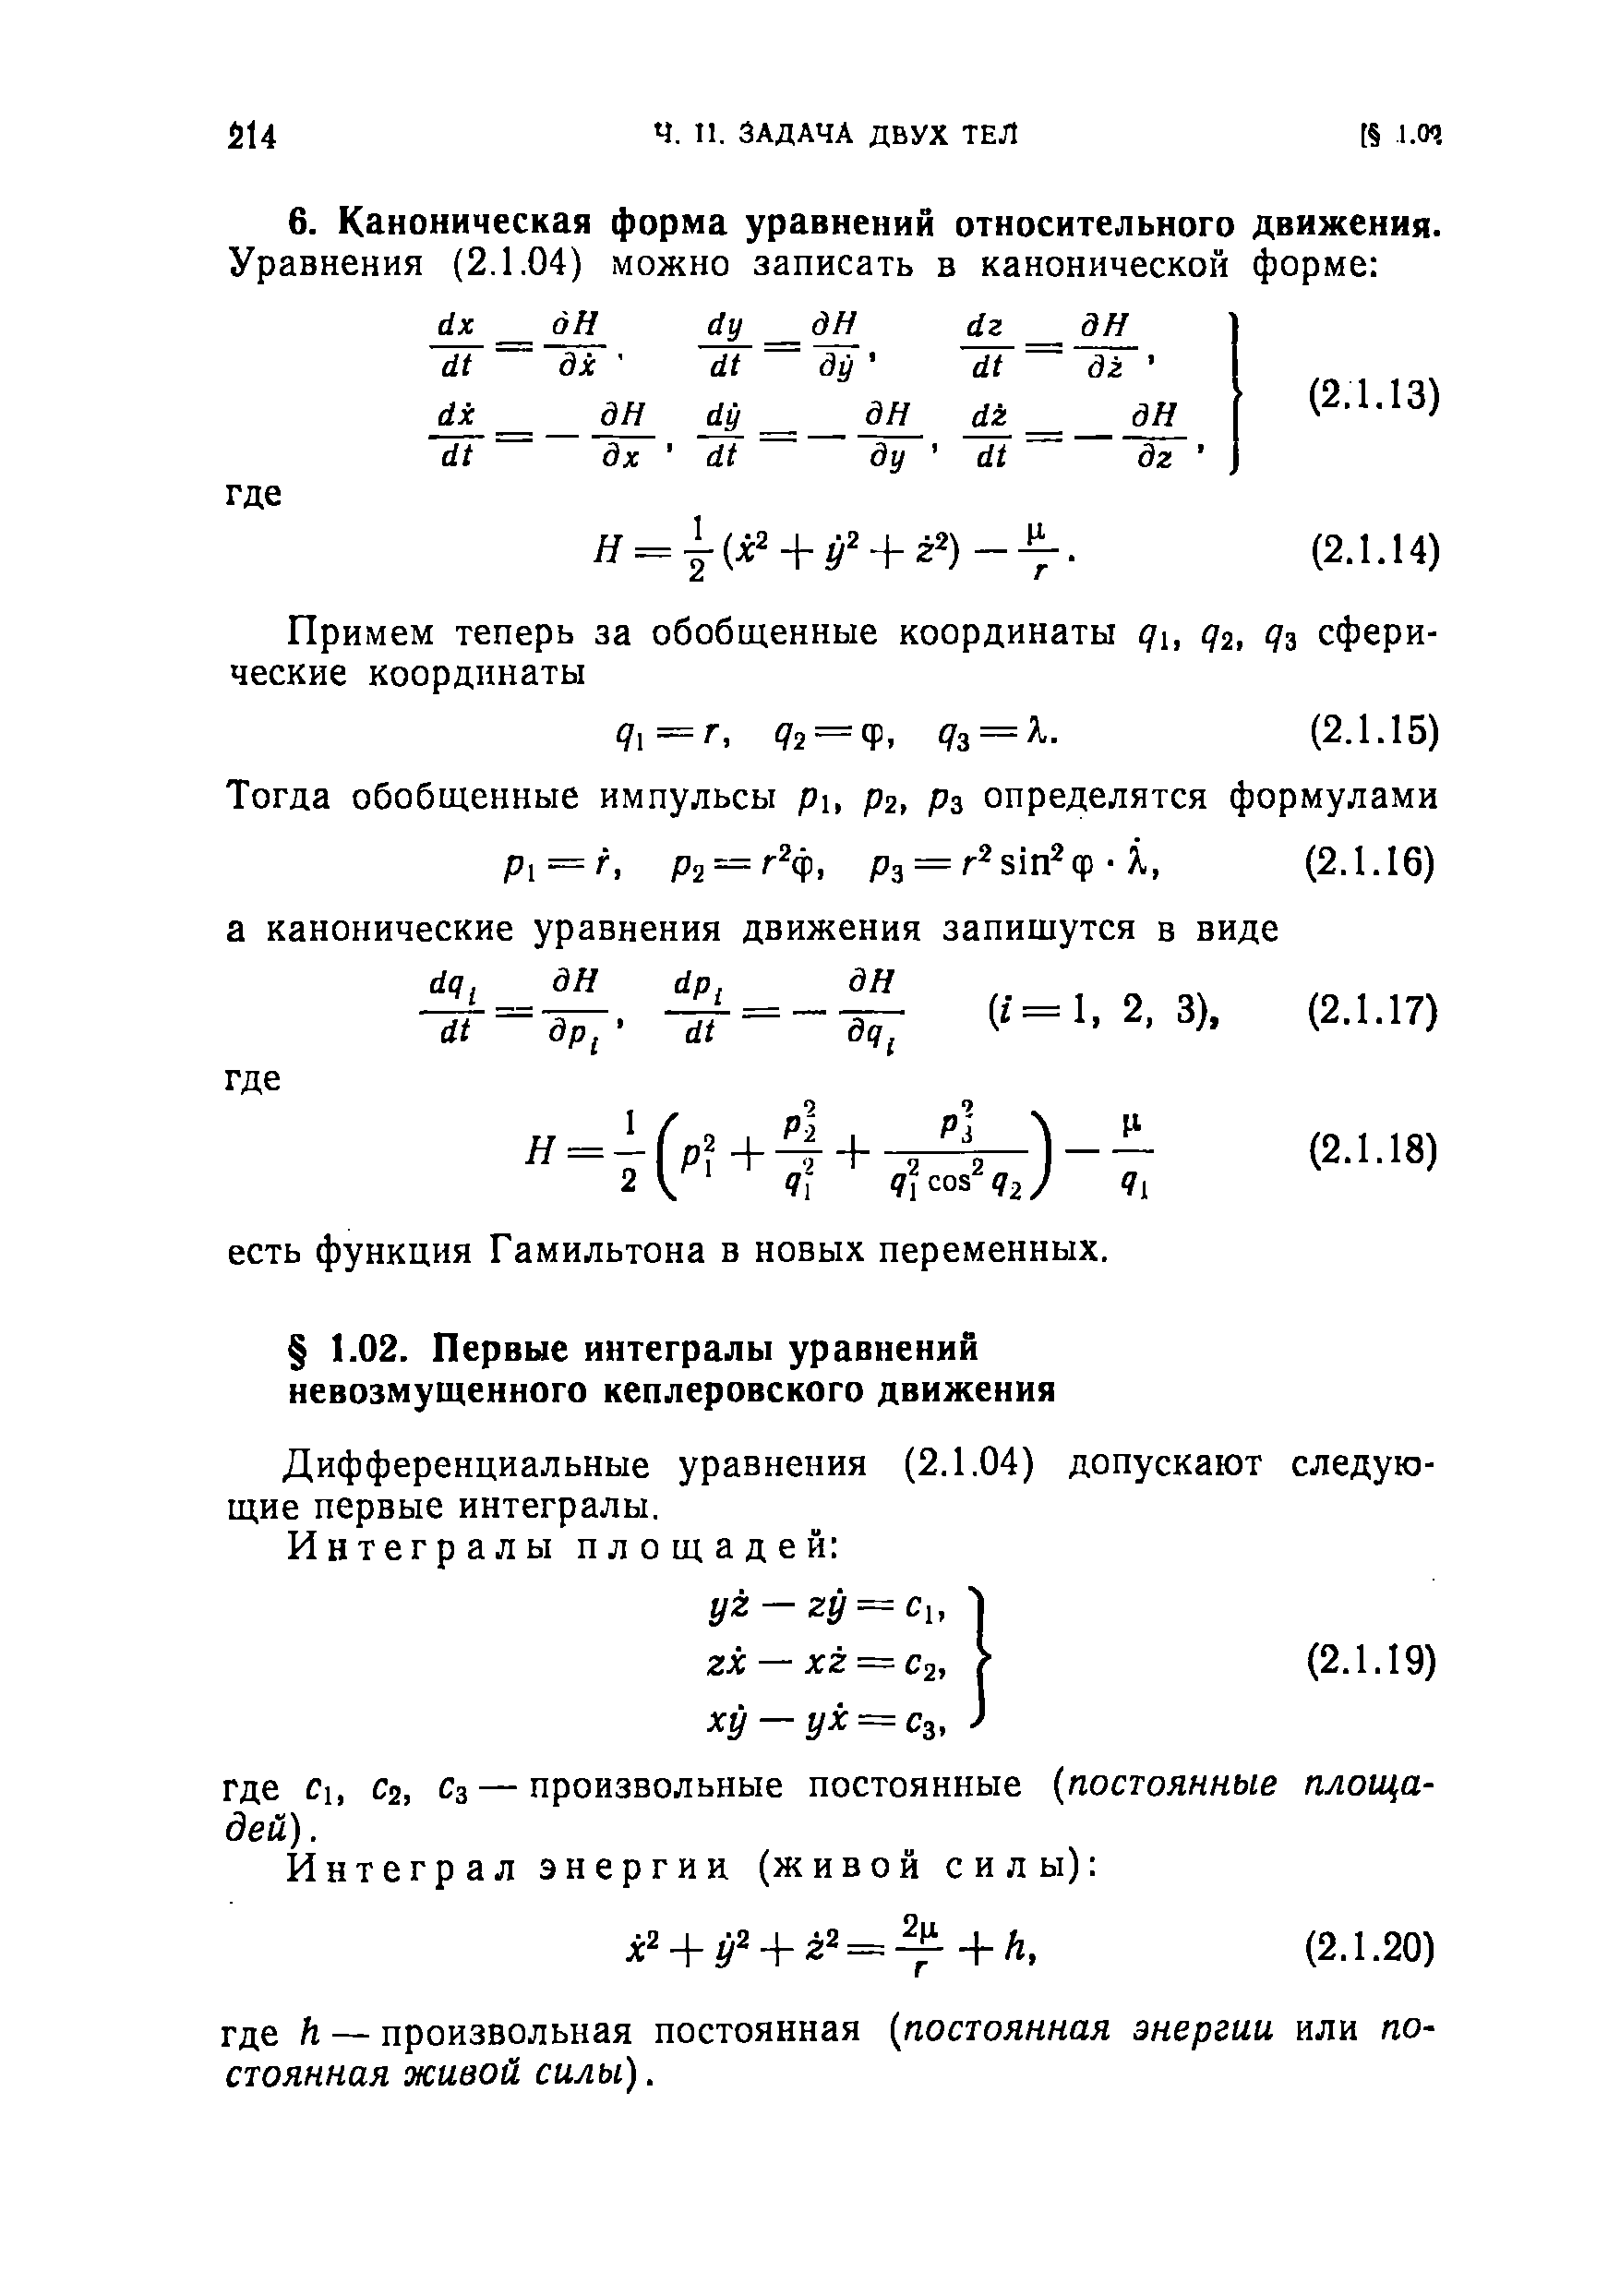 Дифференциальные уравнения (2.1.04) допускают следующие первые интегралы.
